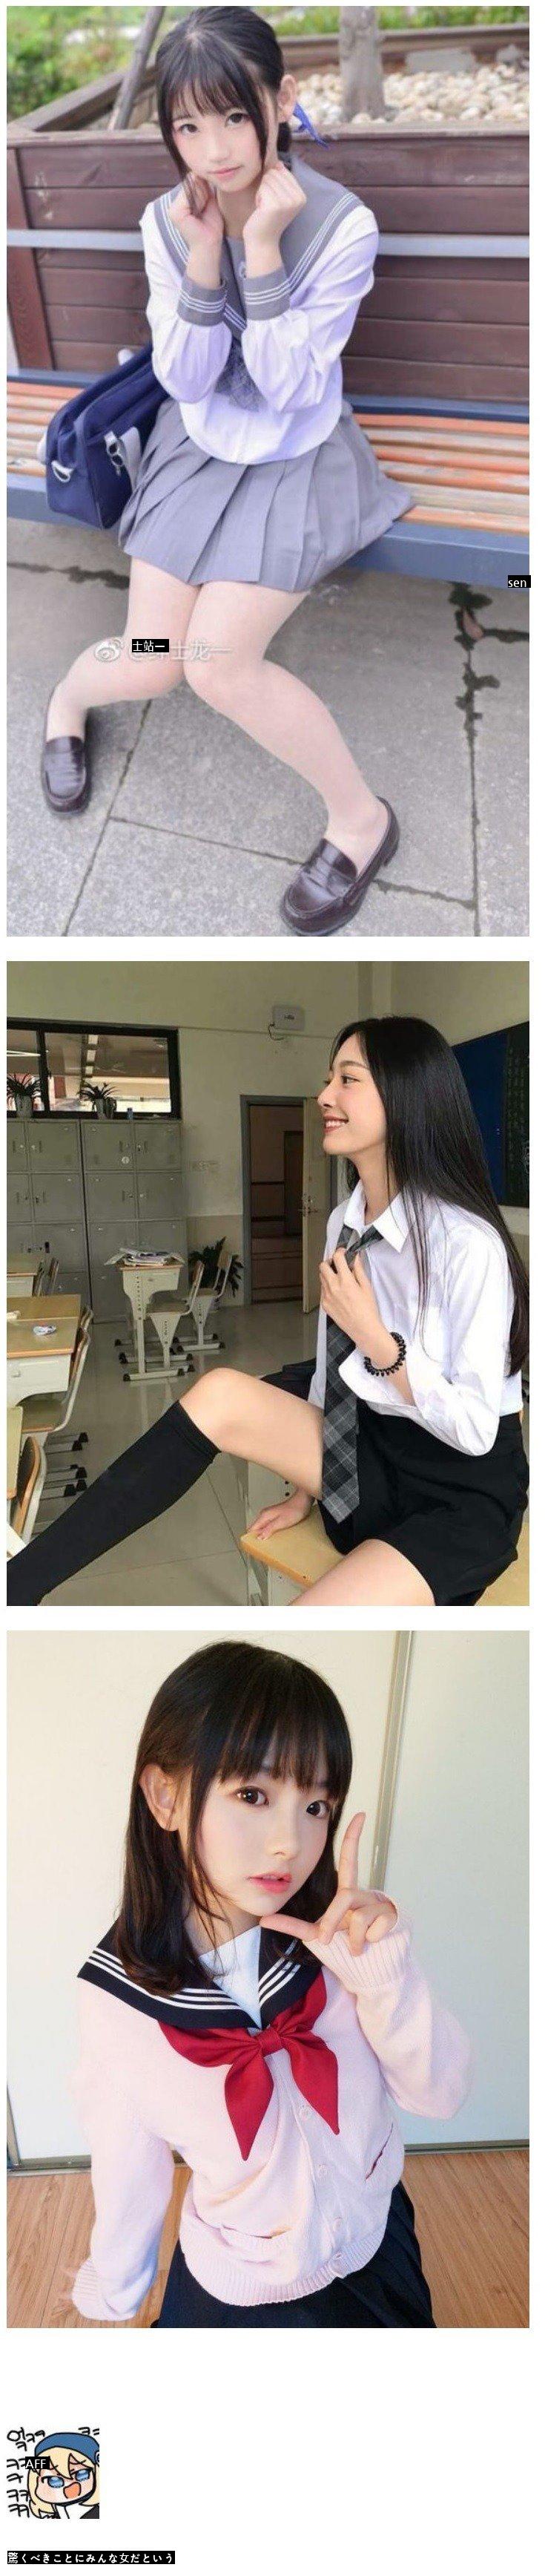 日本の女子高生の写真、衝撃的な反転